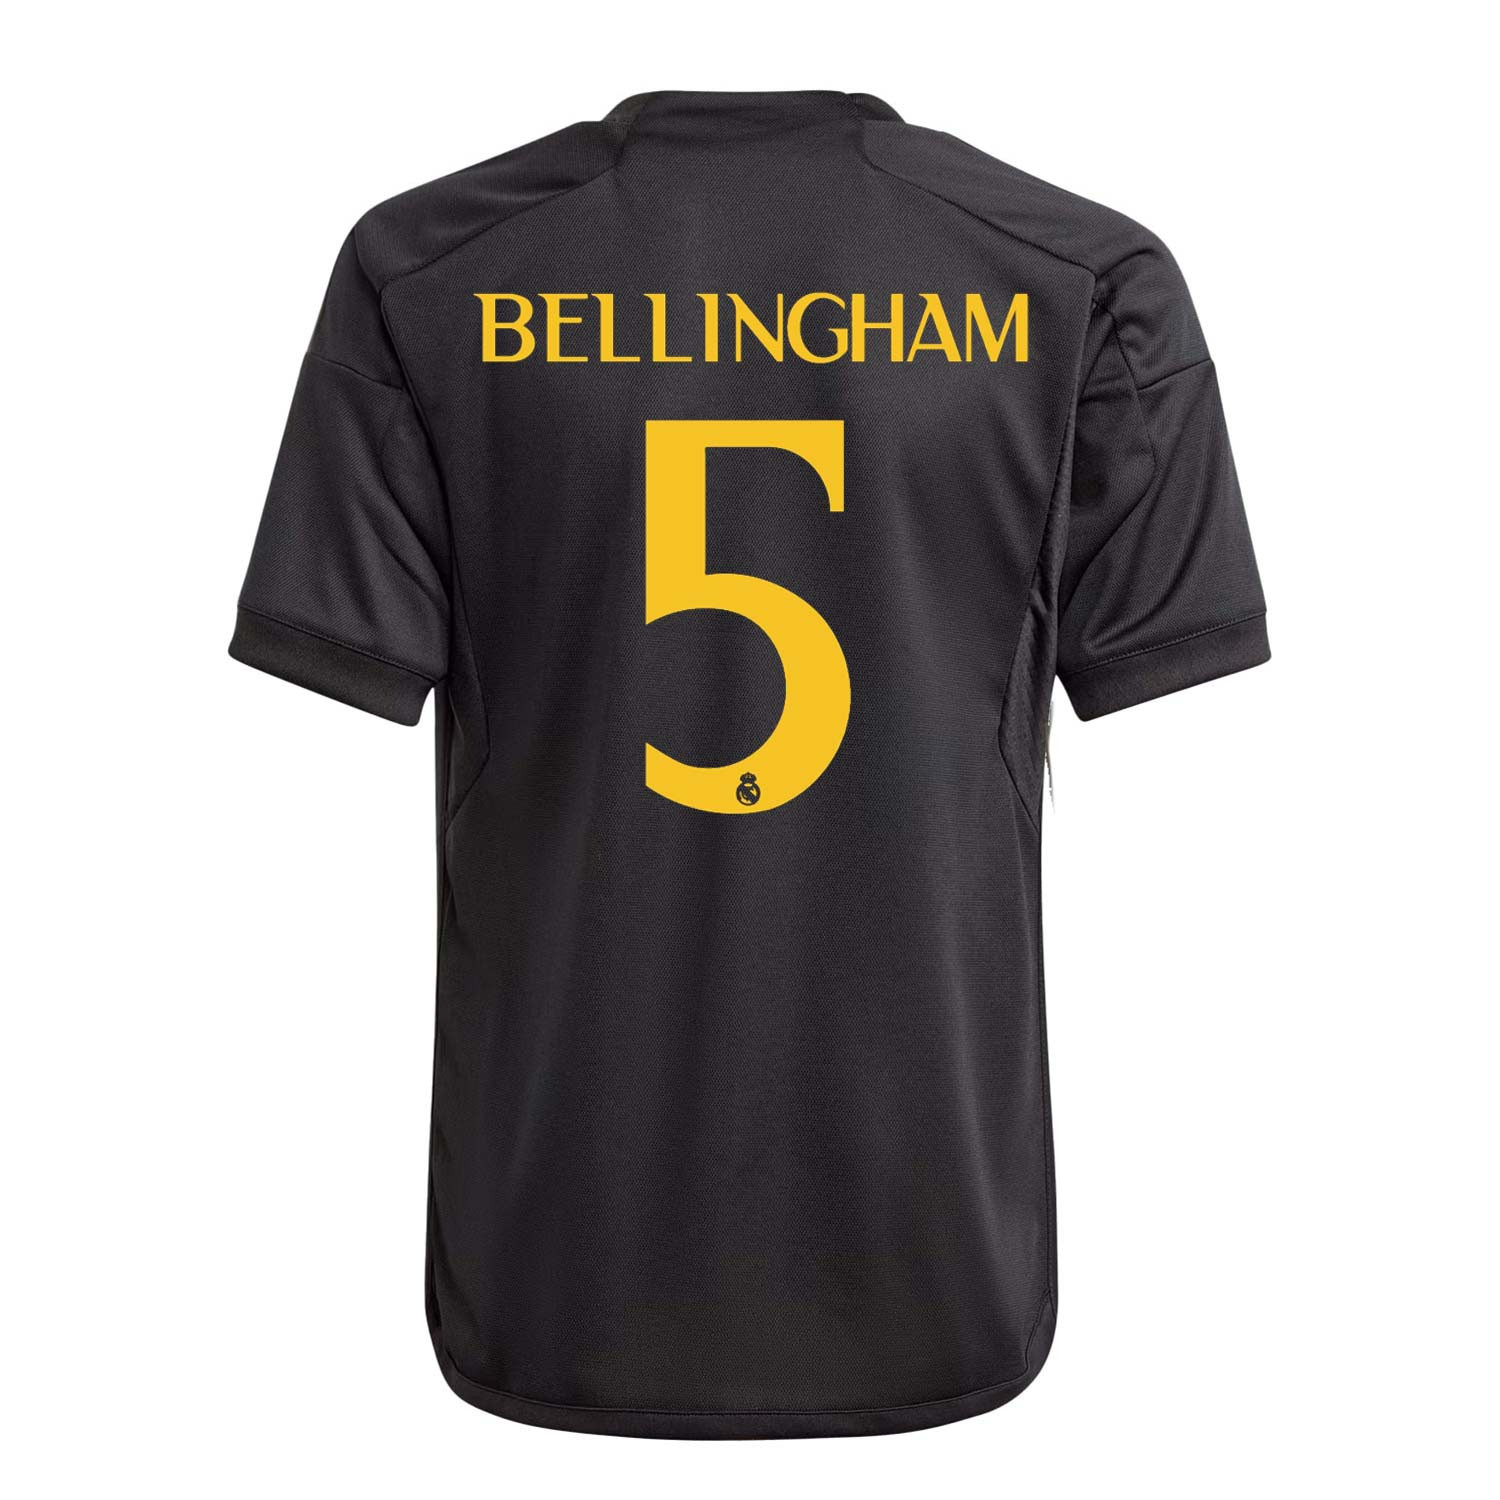 Bellingham hace de oro al Madrid; vende más camisetas que Mbappé y